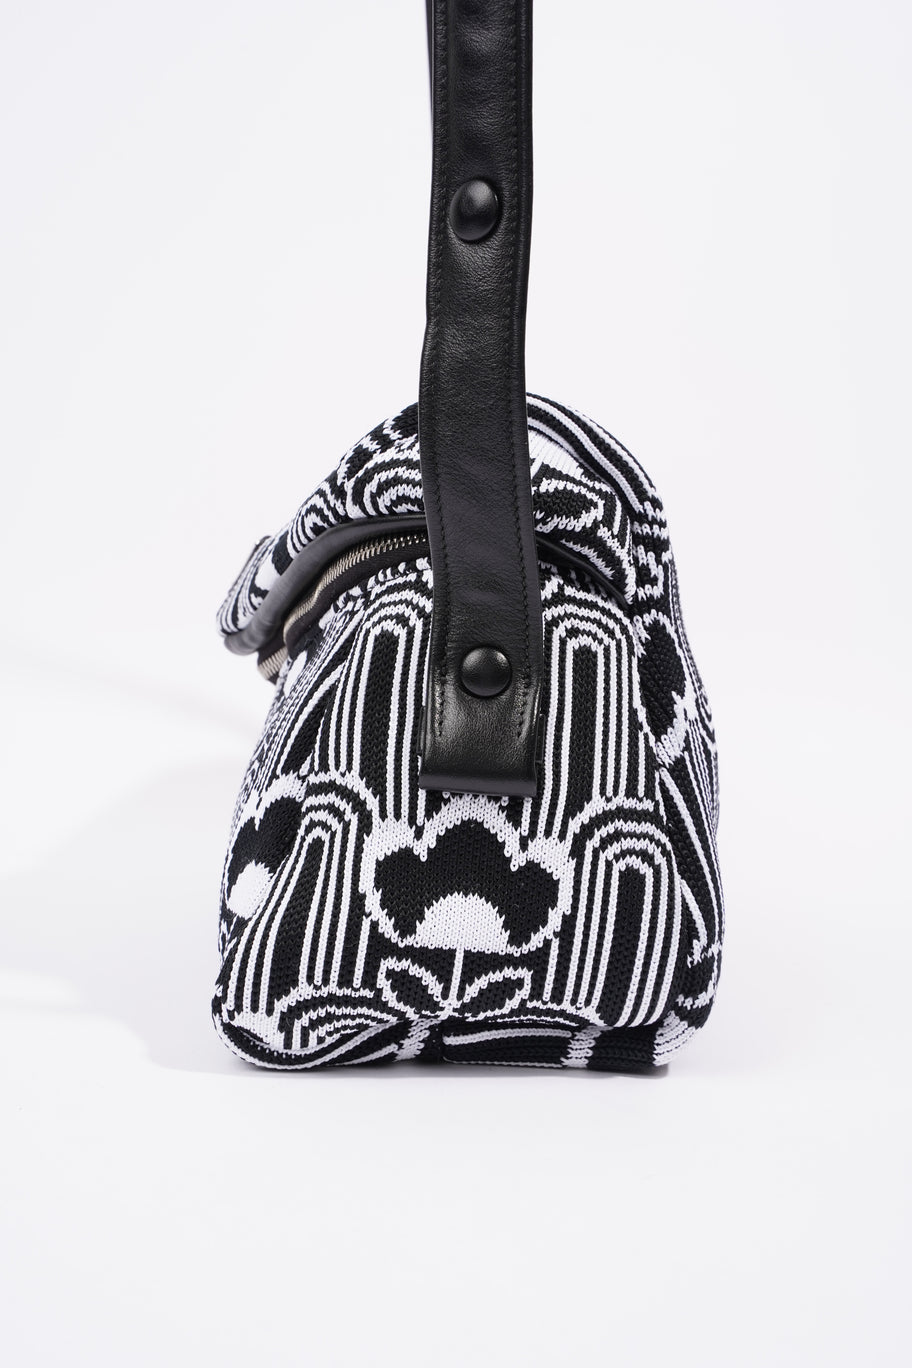 Signaux Jacquard Shoulder Bag Black / White Fabric Image 2